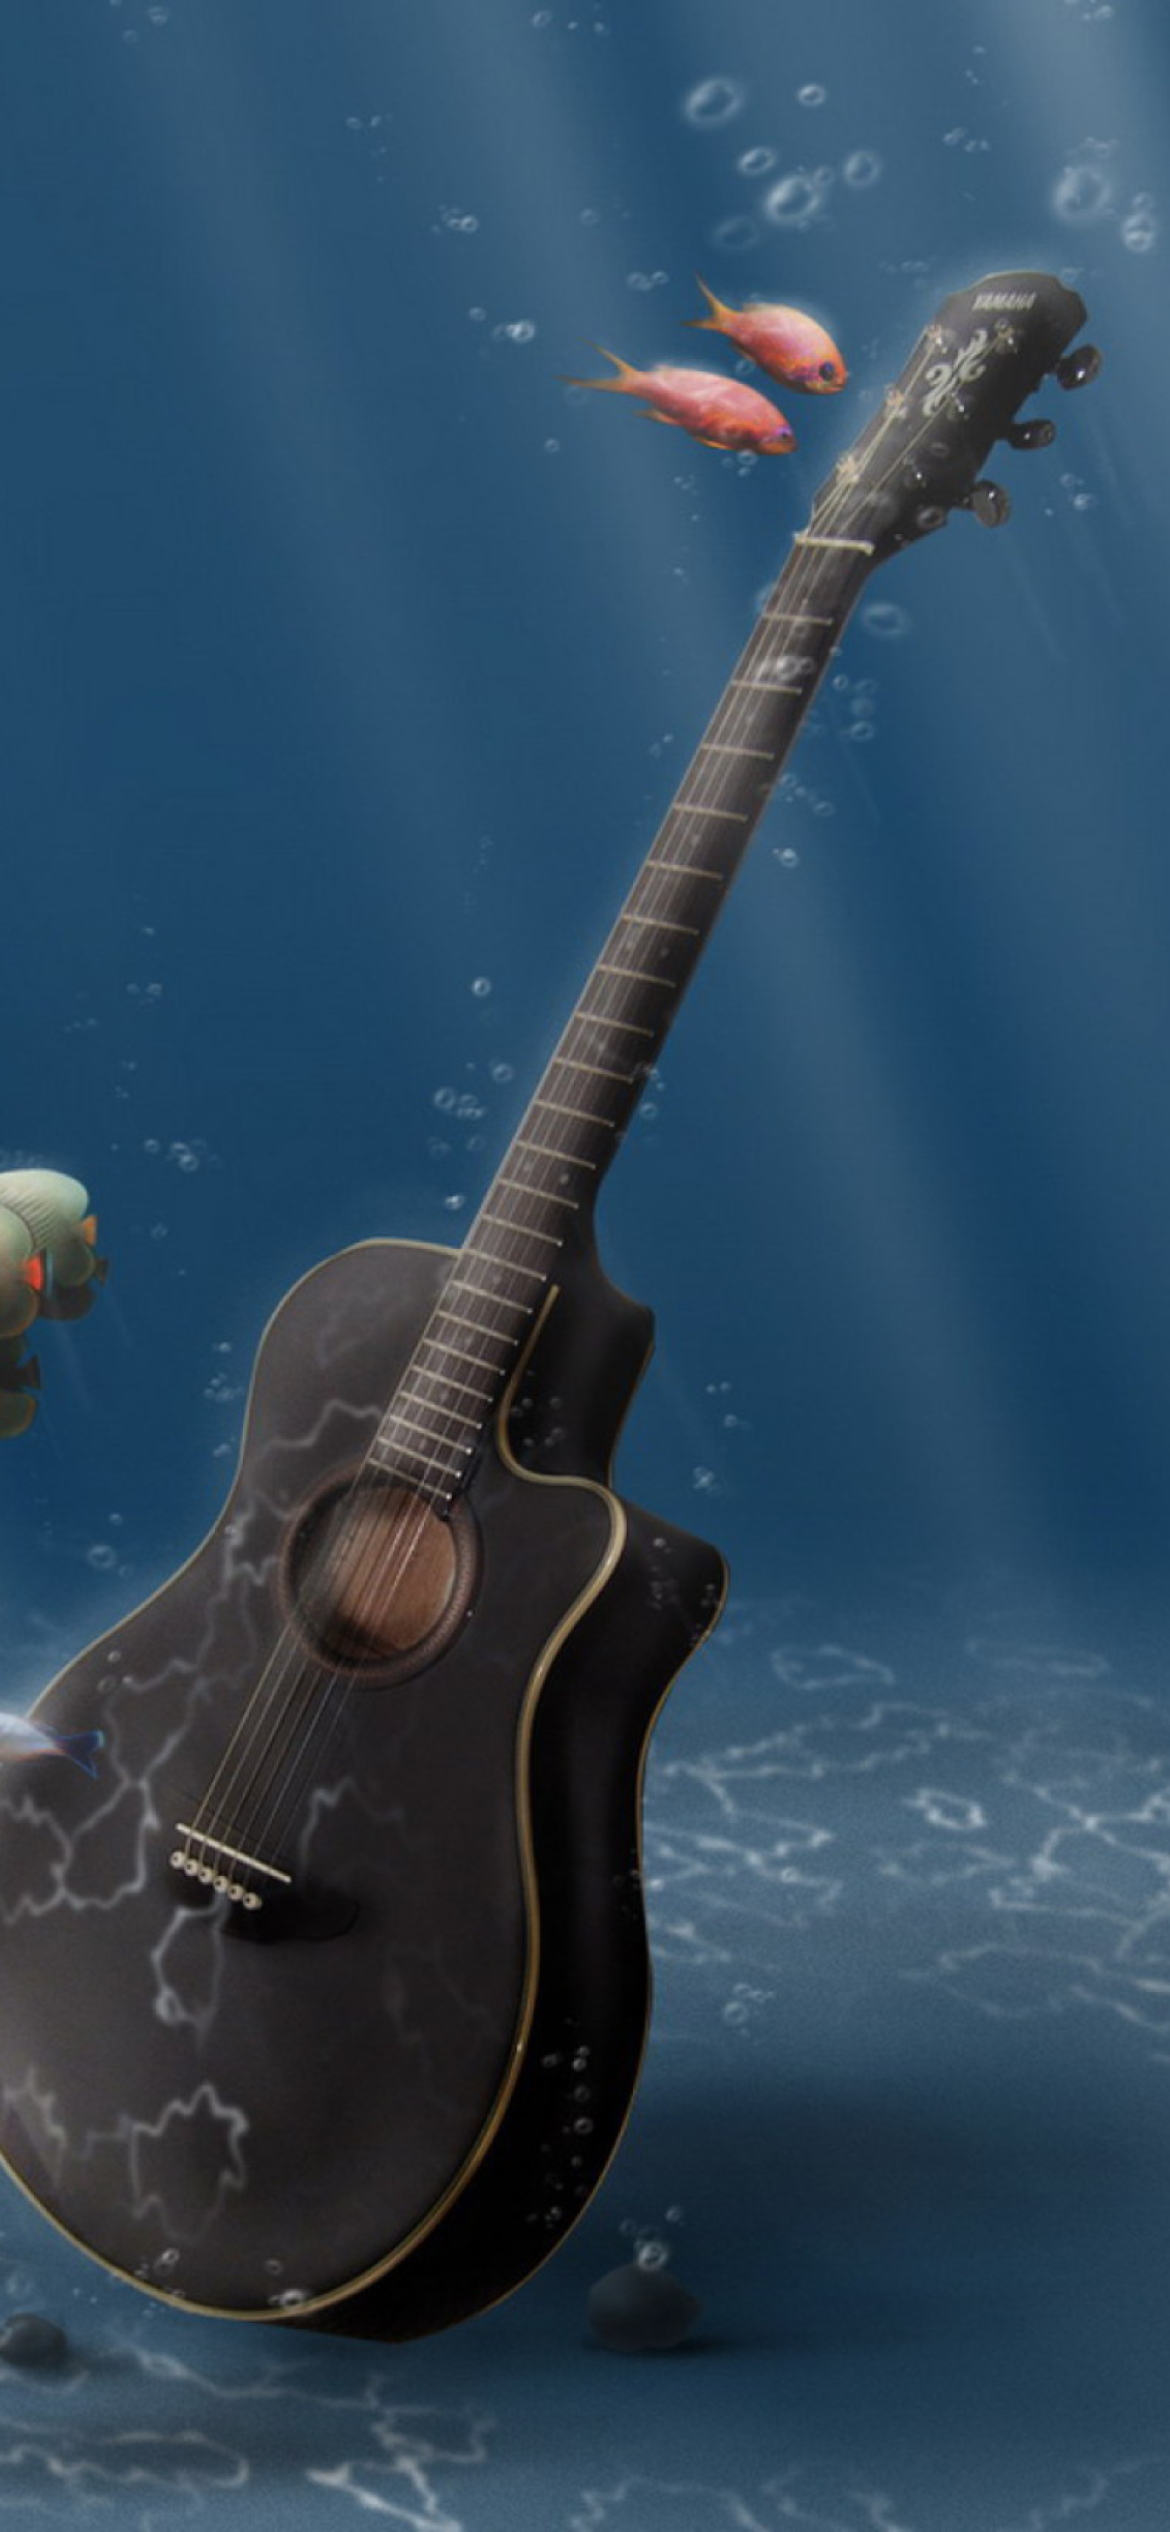 Das Underwater Guitar Wallpaper 1170x2532